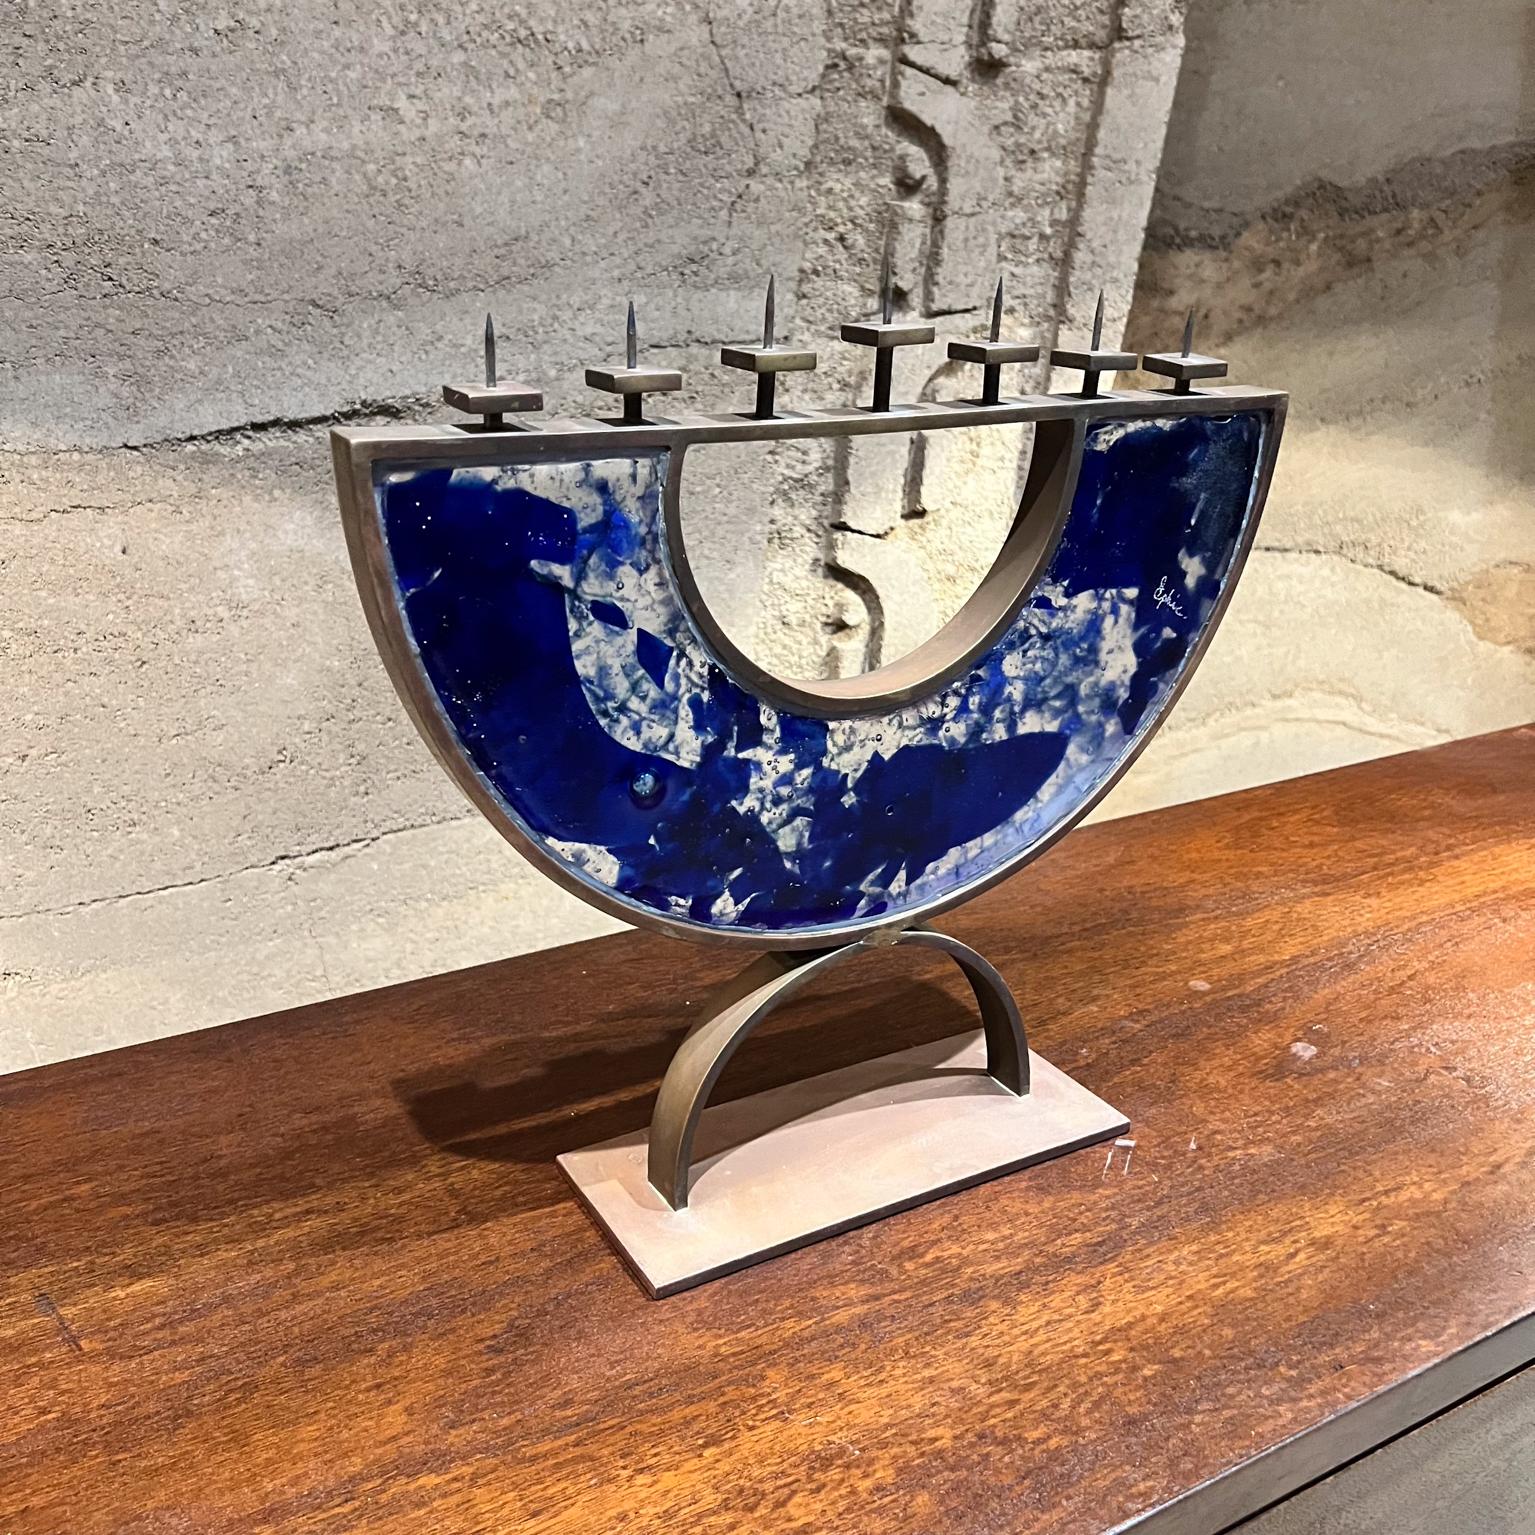 Zeitgenössische jüdische 7-armige Menorah Jerusalem Meer 
blaues geschmolzenes Kunstglas und Bronze.
Signiert vom Künstler. 
15,25 H x 16,5 B x 4 T
Sehr guter Originalzustand. 
Sehen Sie sich bitte die Bilder an.



  